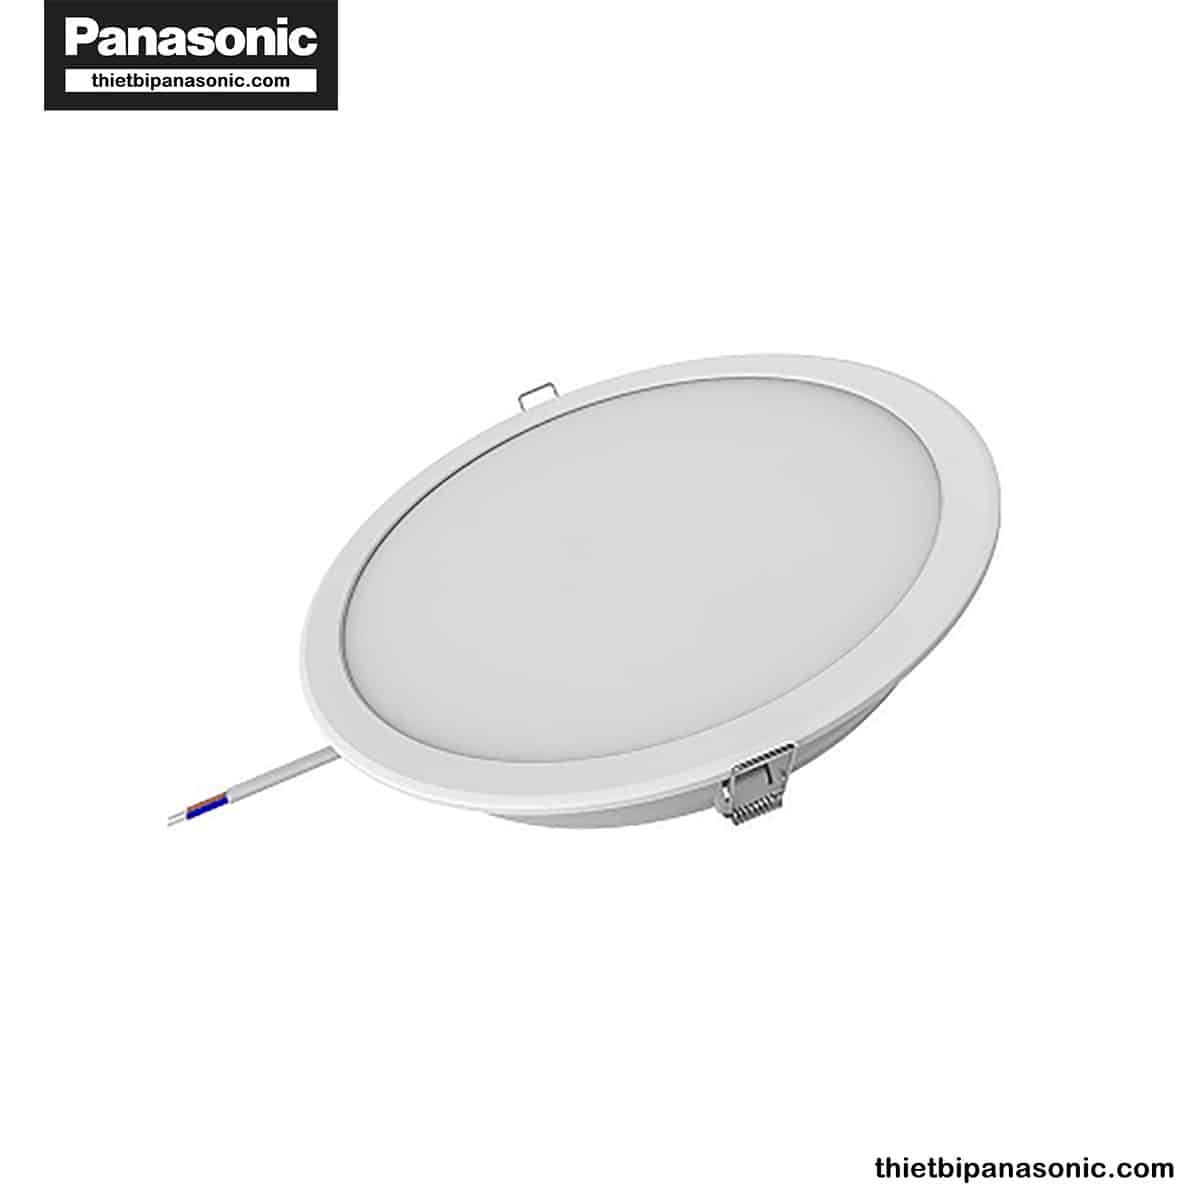 Đèn LED âm trần DN 2G Panasonic 18W đơn sắc tròn | lỗ khoét Ø150mm, Ø175mm